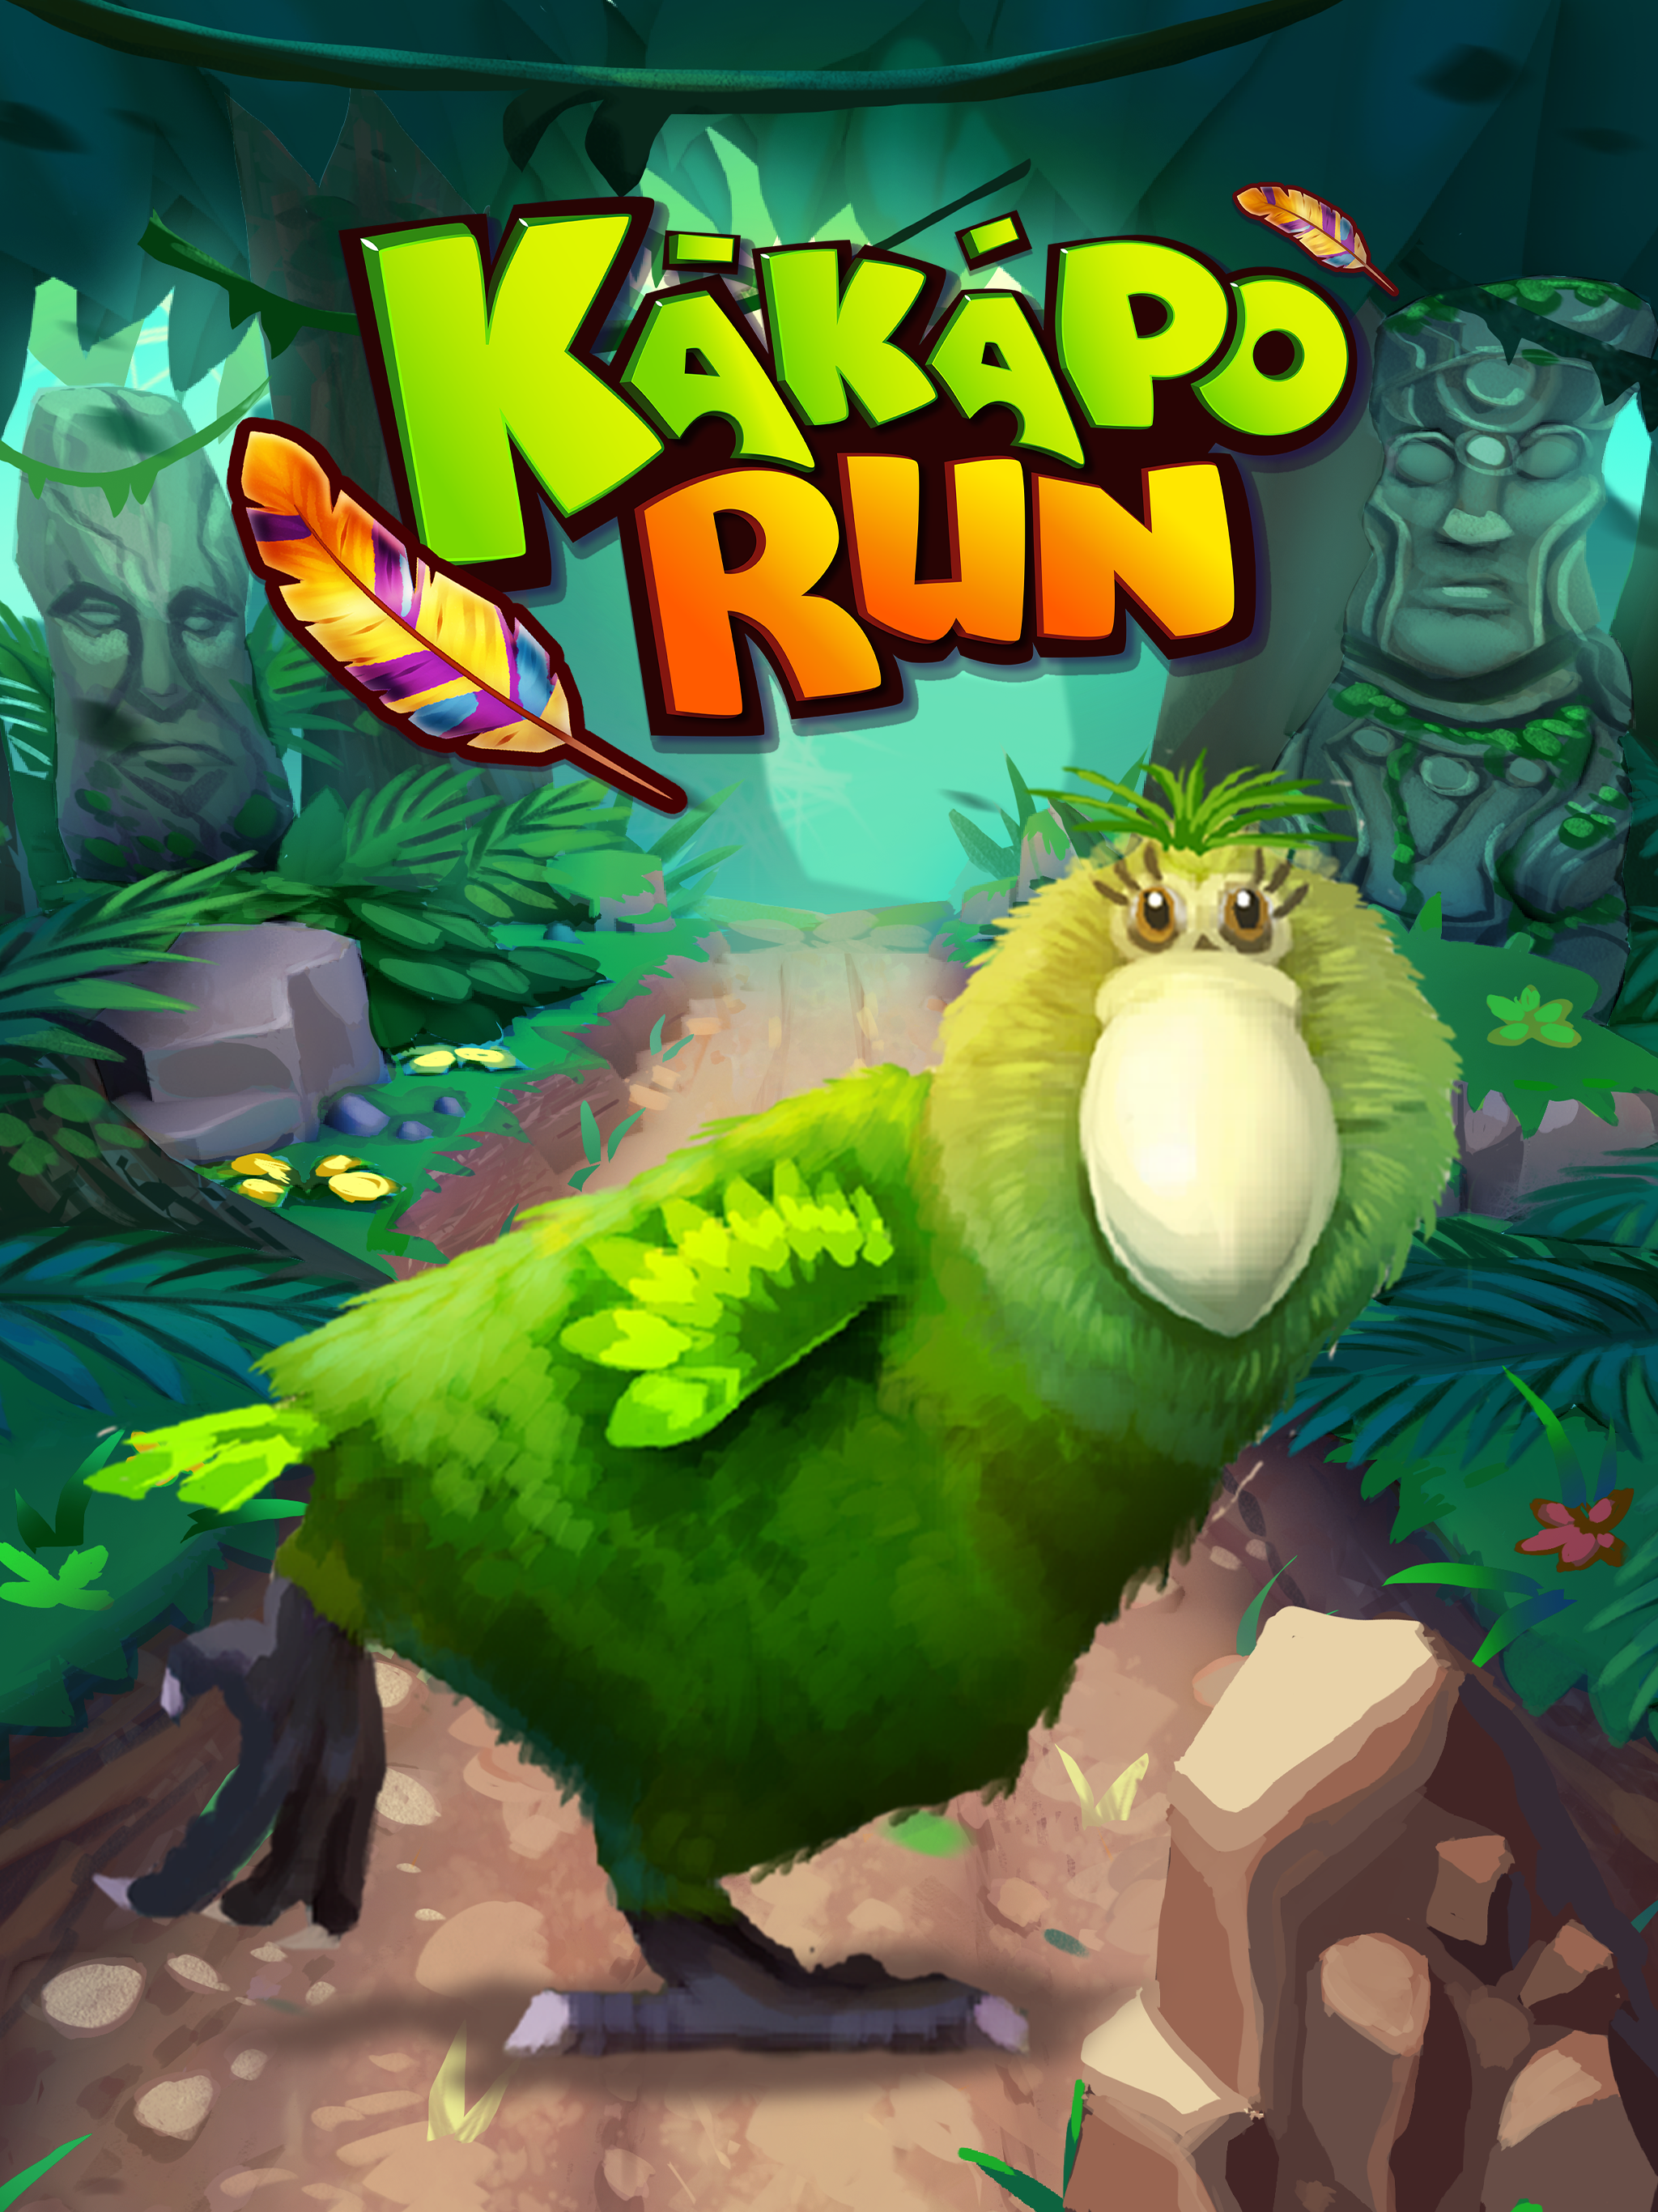 Kakapo run character